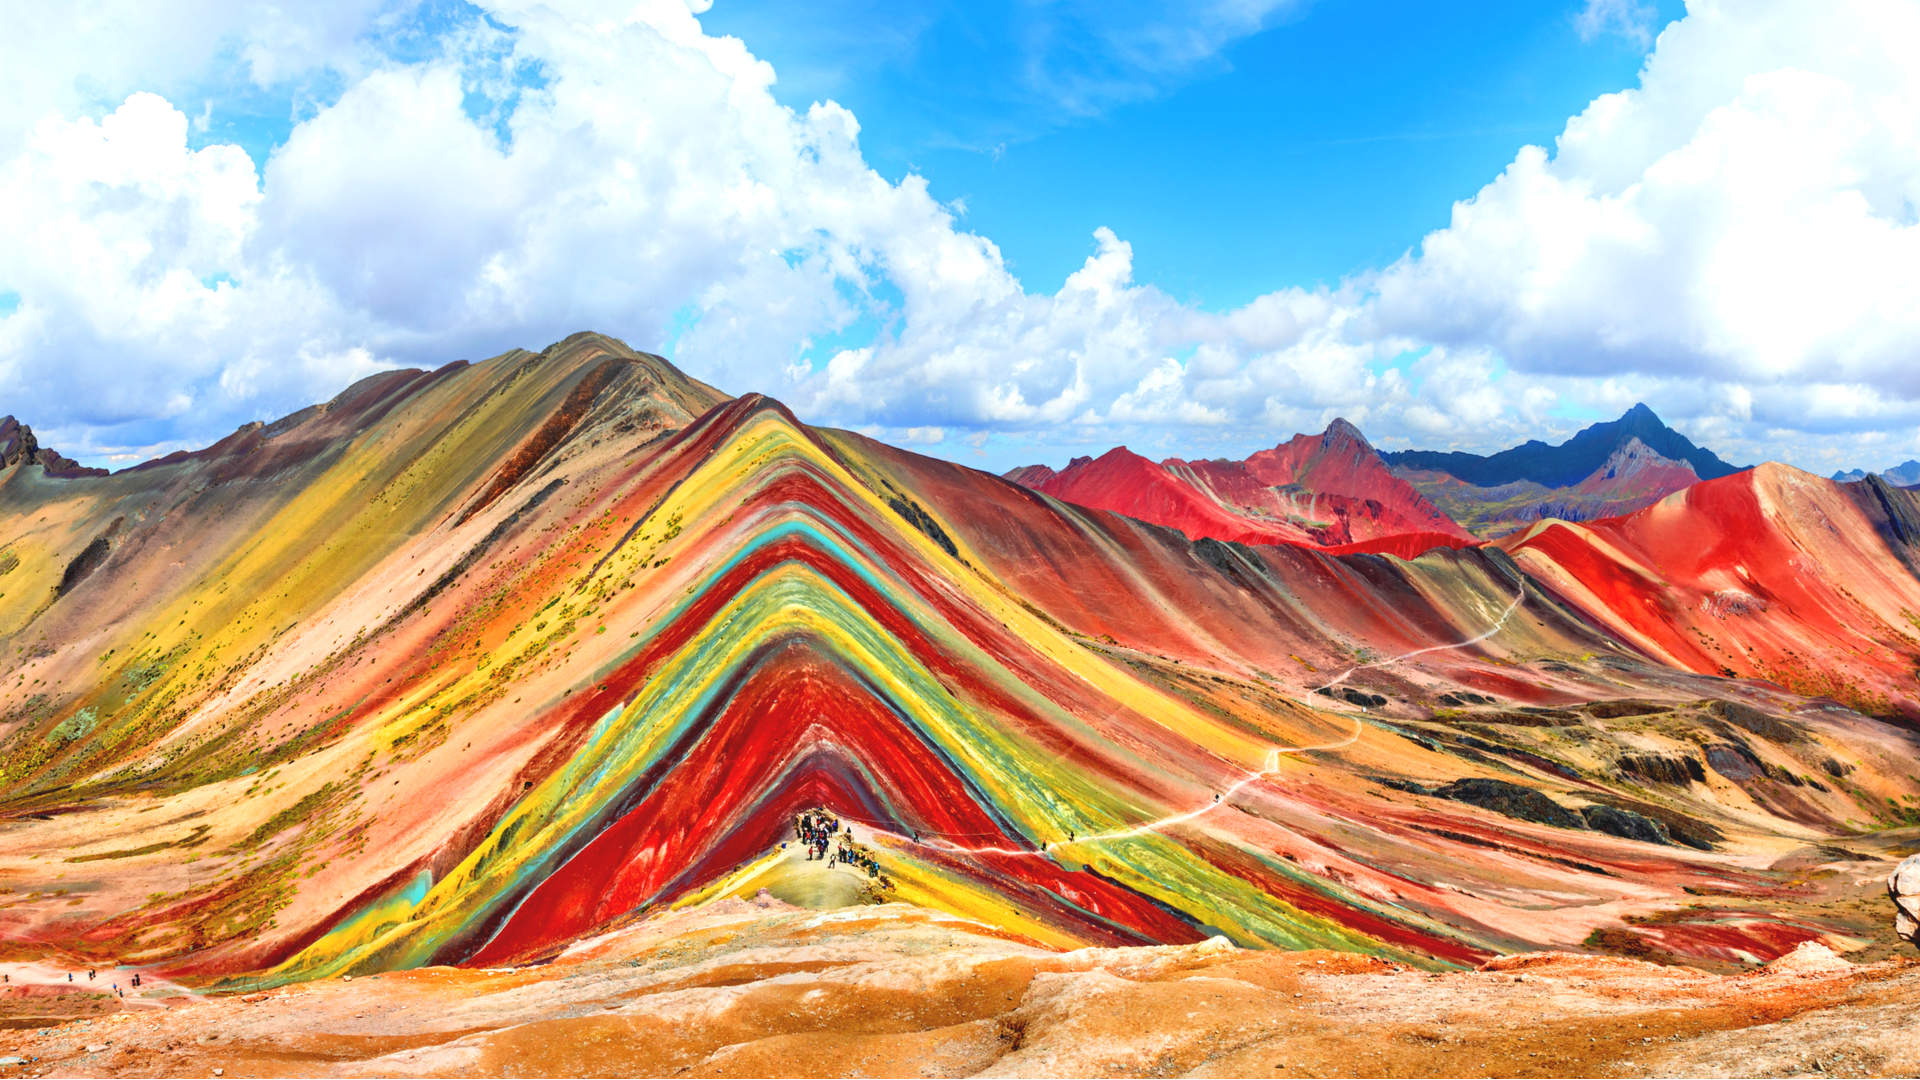 一度は見たい虹色の山々 美しい レインボー な絶景スポット5選 Trip Editor